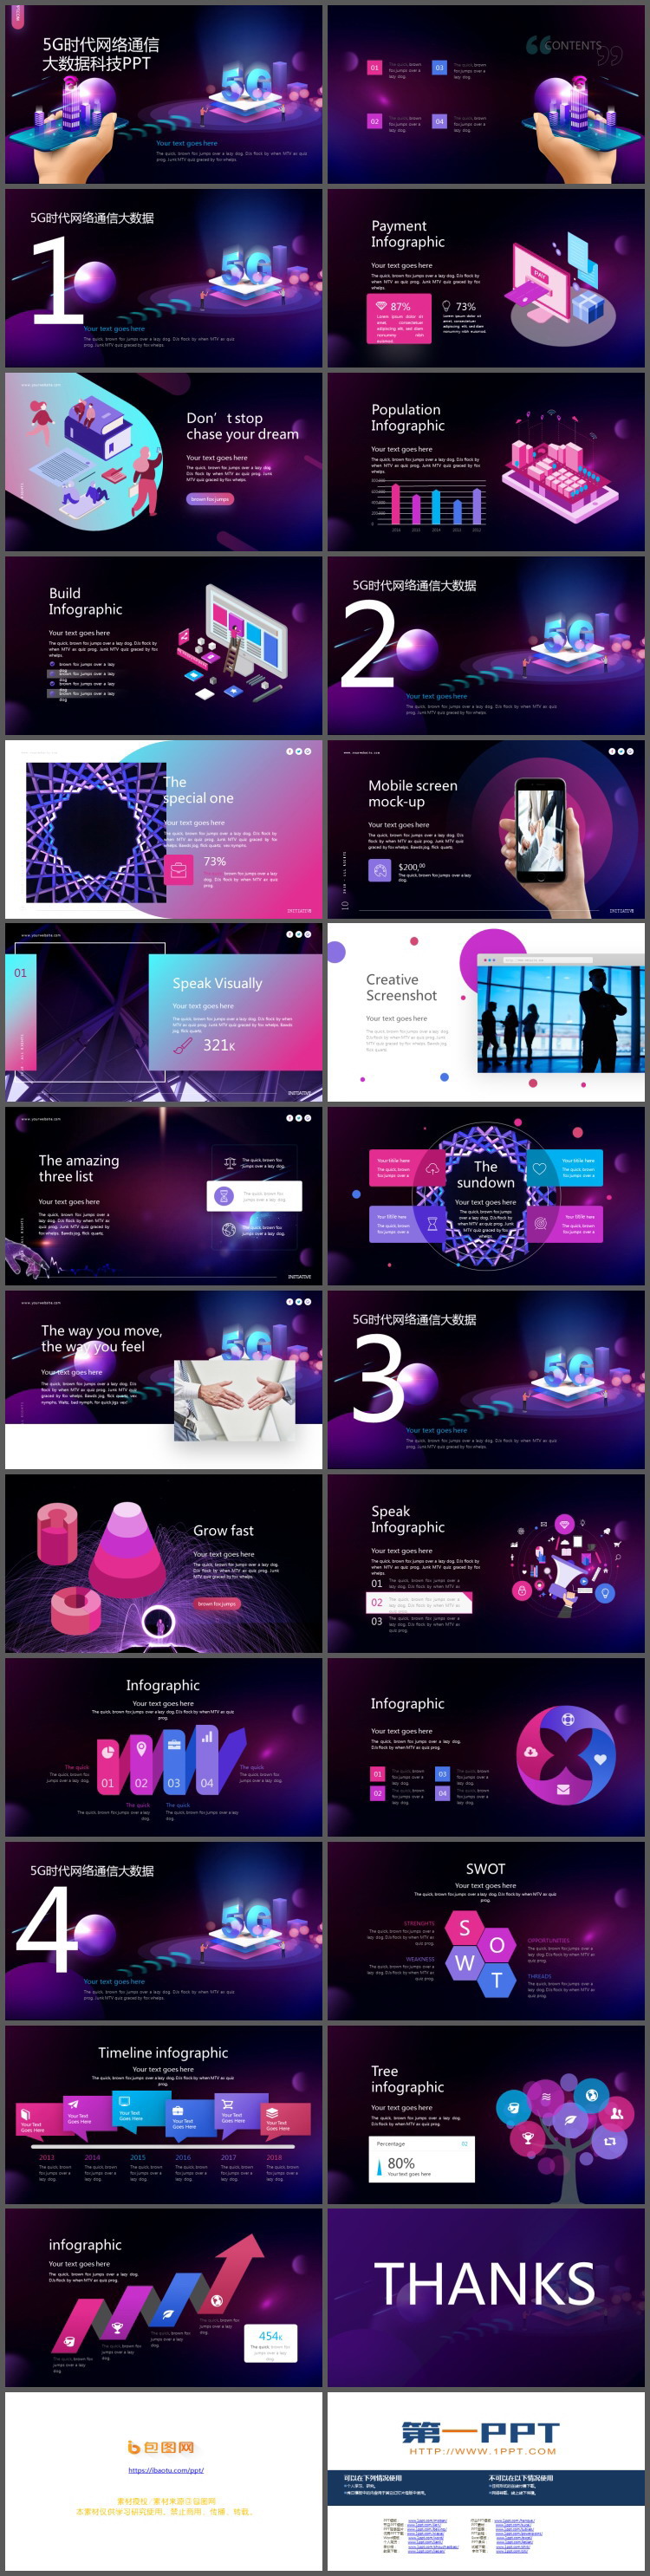 紫色2.5D风格5G科技主题PPT模板免费下载